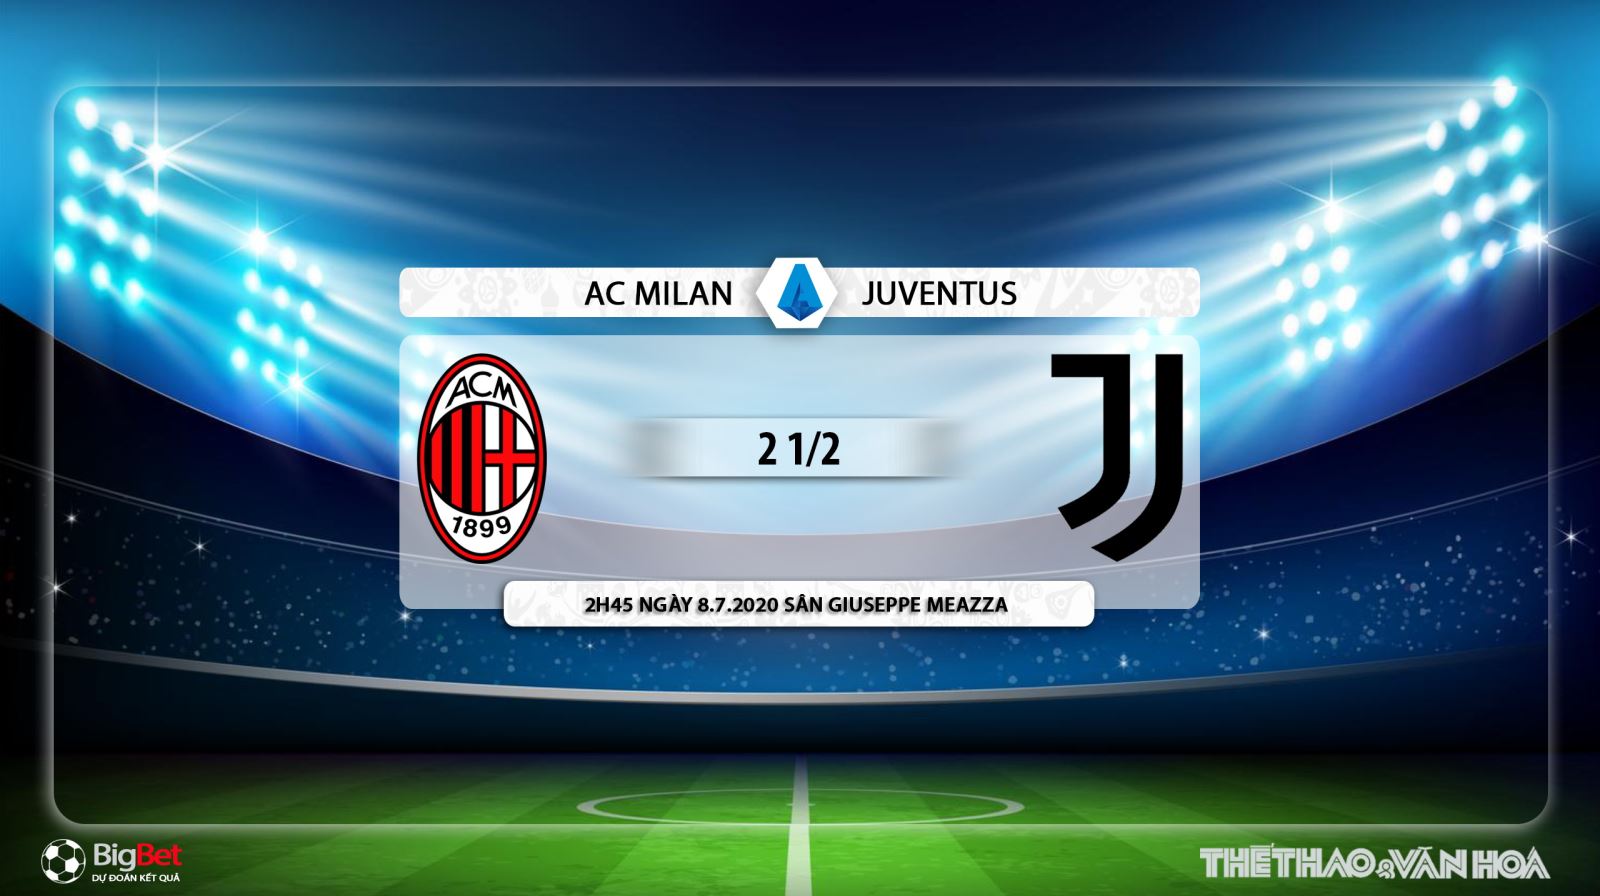 AC Milan vs Juventus, AC Milan, Juventus, nhận định bóng đá AC Milan vs Juventus, trực tiếp AC Milan vs Juventus, nhận định AC Milan vs Juventus, dự đoán, kèo bóng đá, nhận định bóng đá